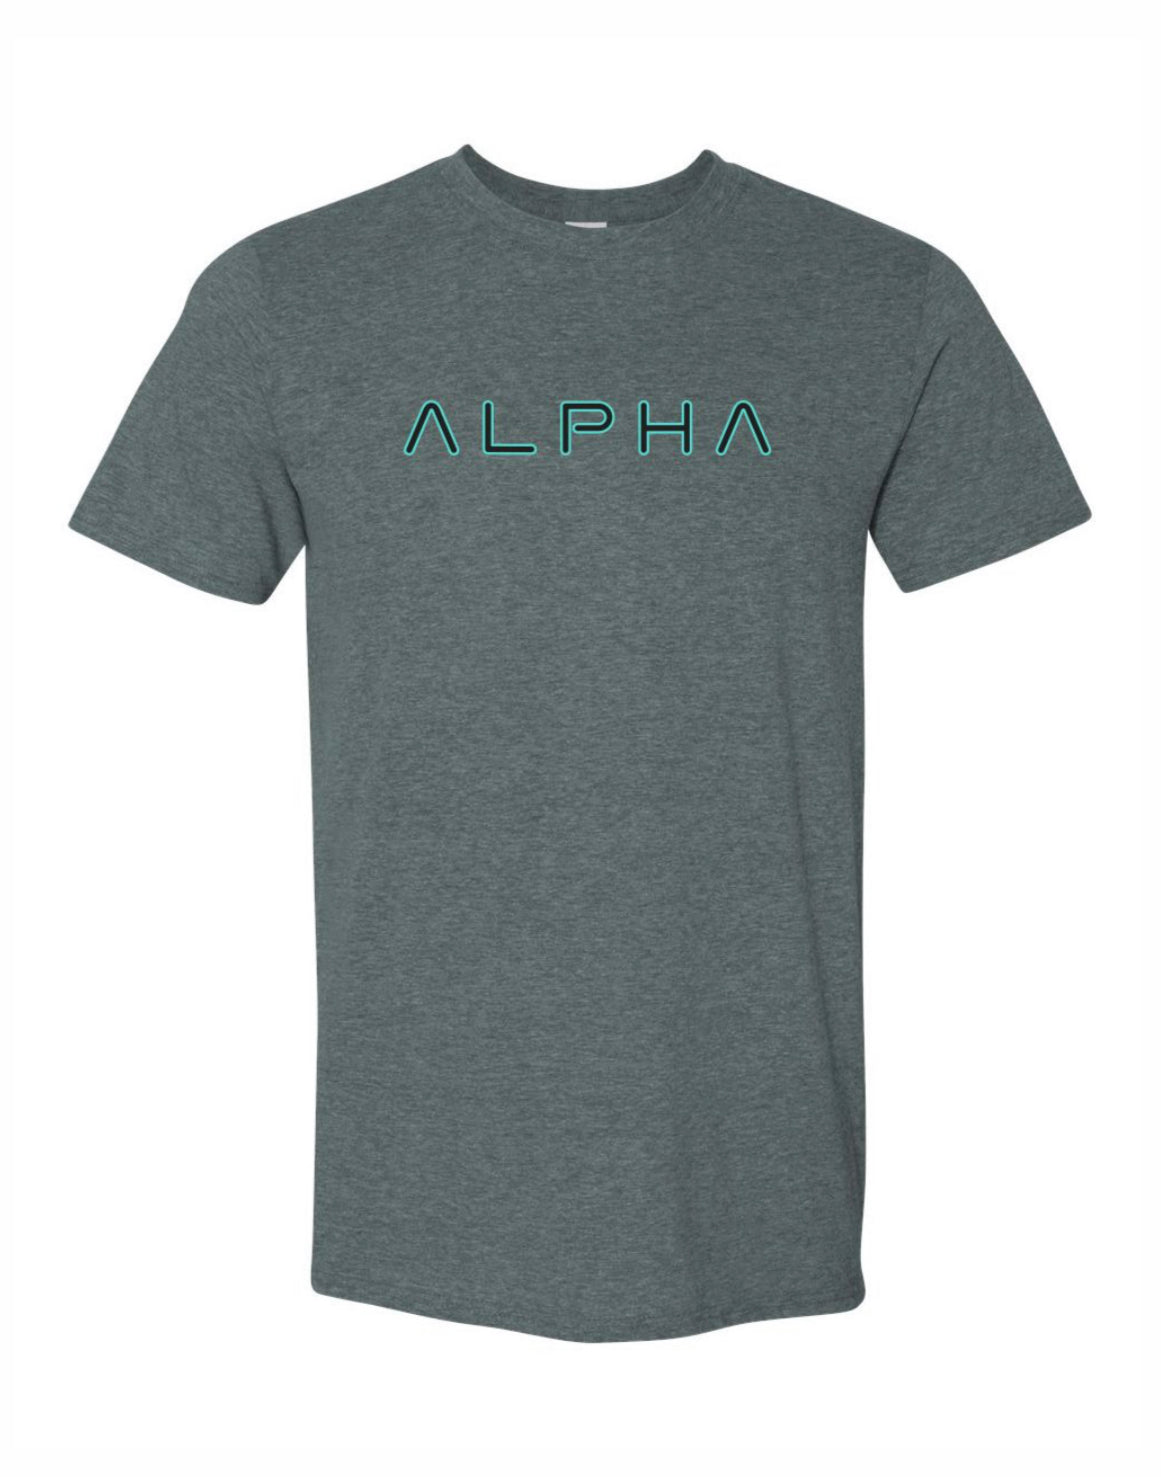 Alpha Soft Feel T-Shirt